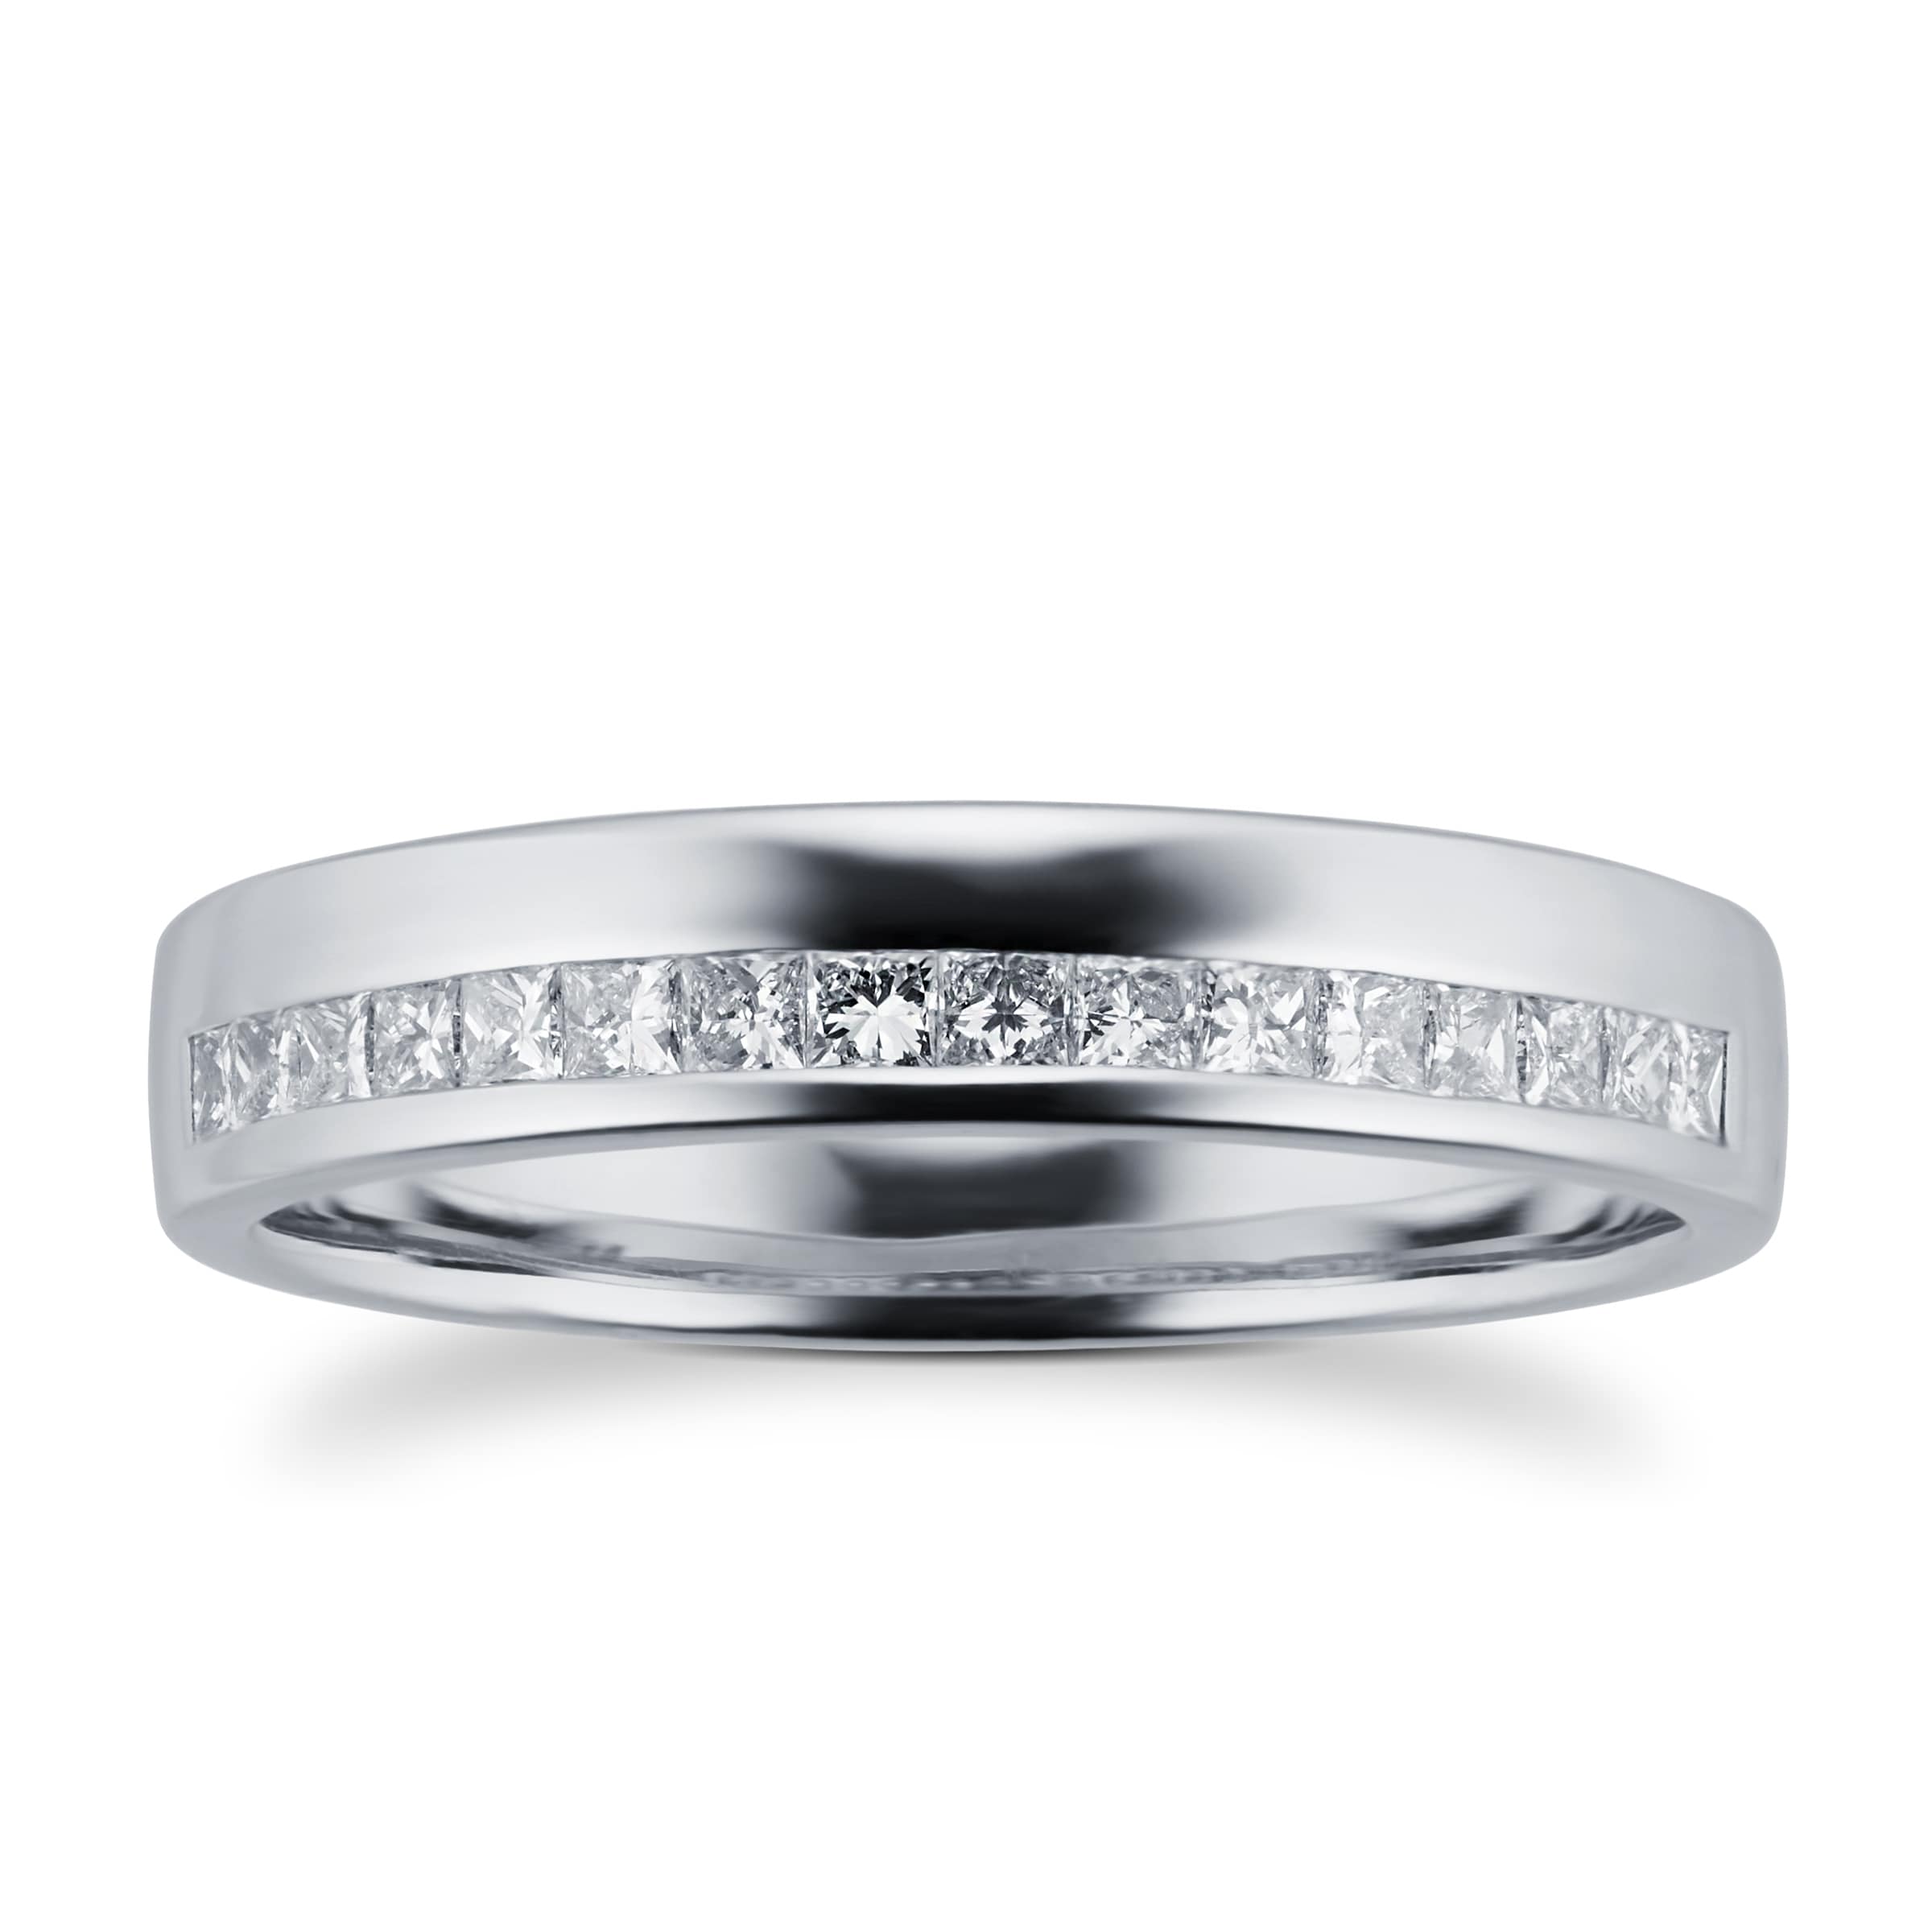 Princess Cut 0.33 Total Carat Weight Diamond Ladies Wedding Ring Set In Platinum - Ring Size P